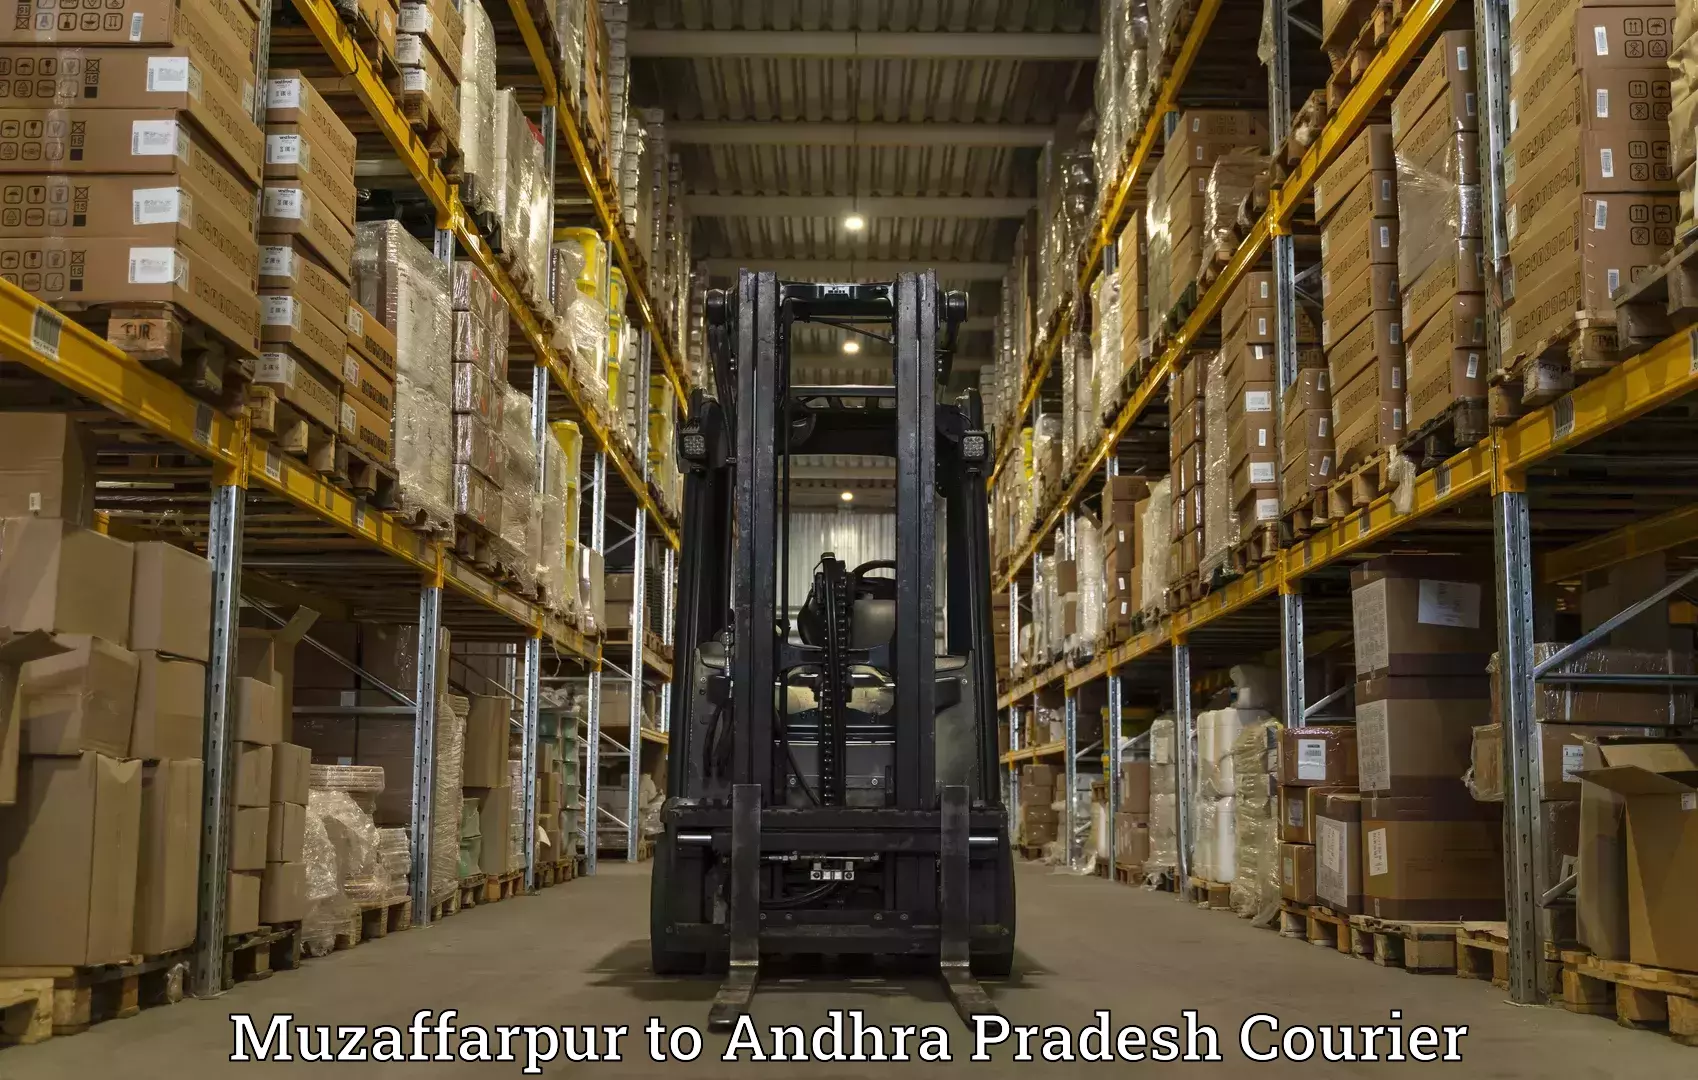 Efficient parcel delivery in Muzaffarpur to Andhra Pradesh